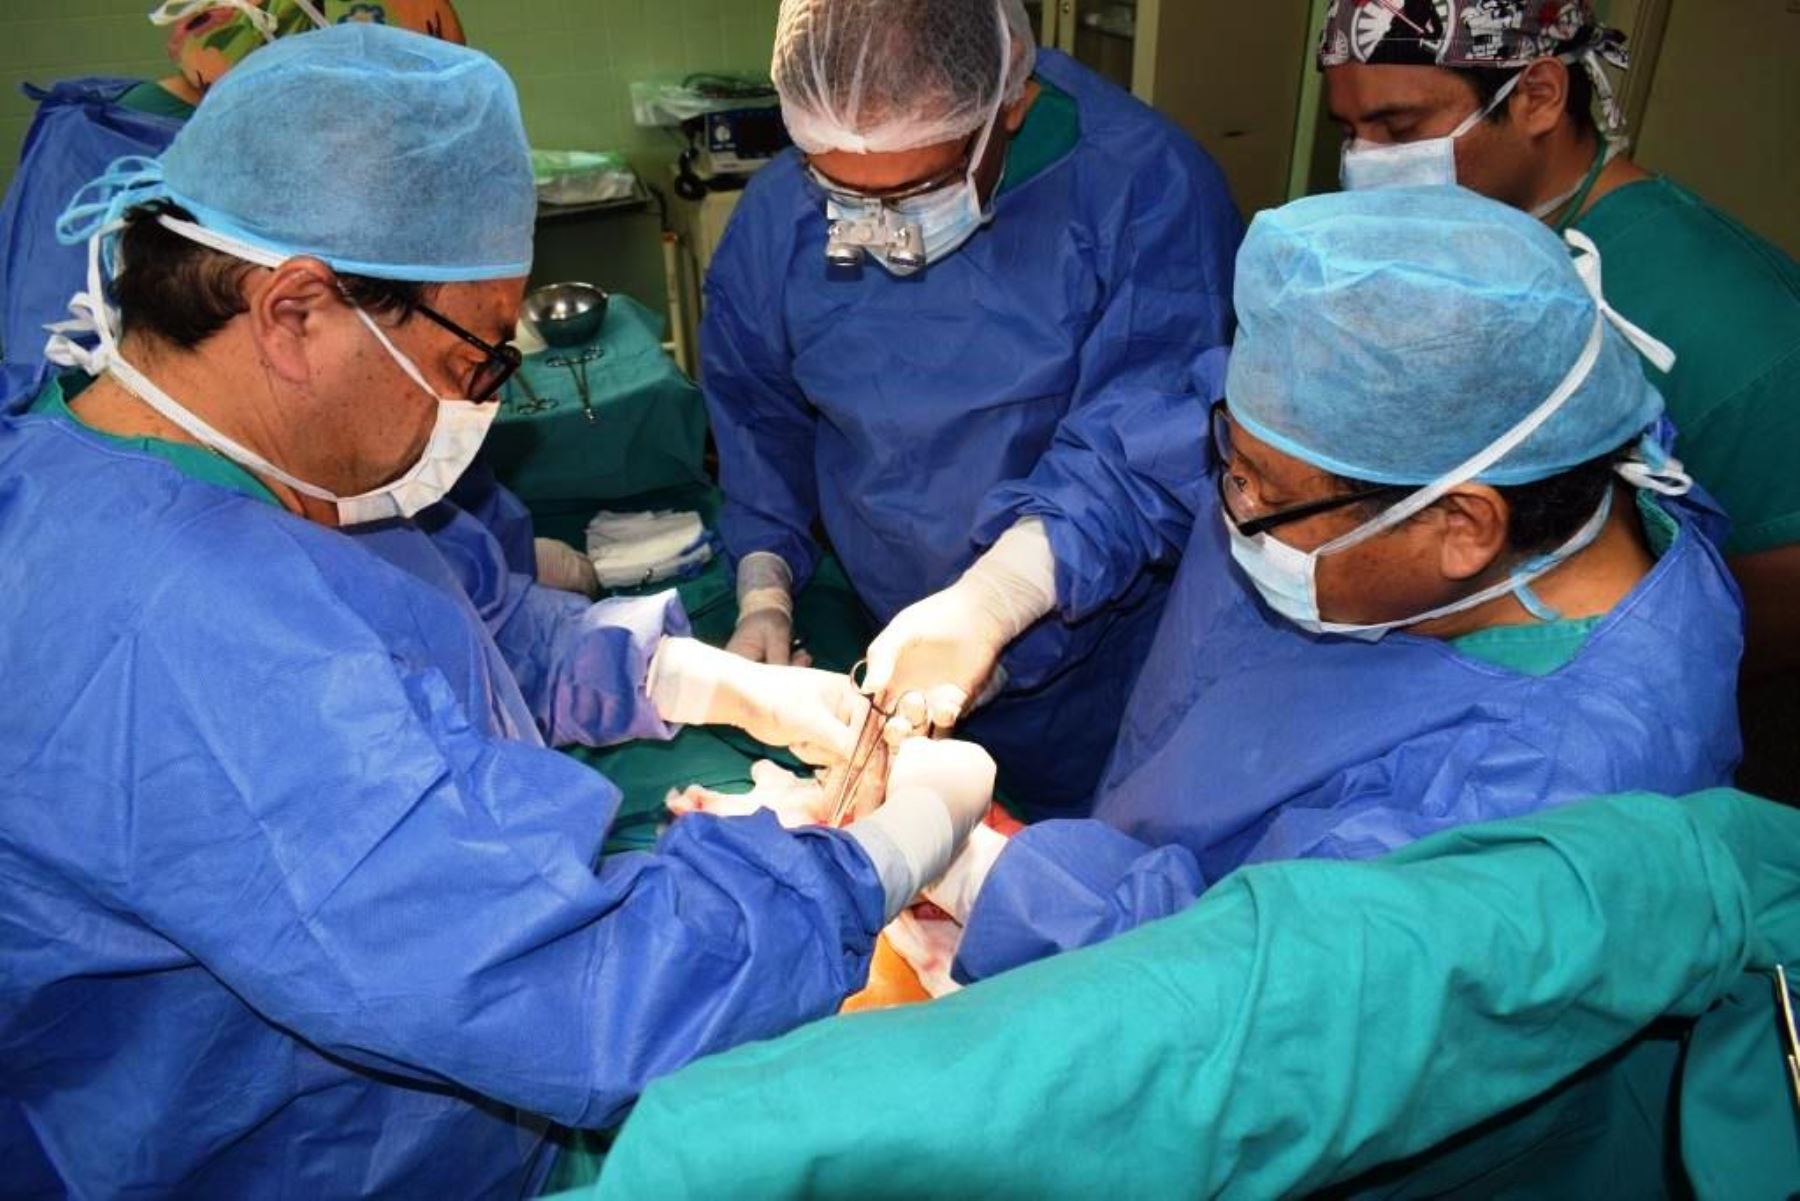 Médicos peruanos extirpan con éxito tumor en menor de 2 años. Foto: ANDINA/Difusión.